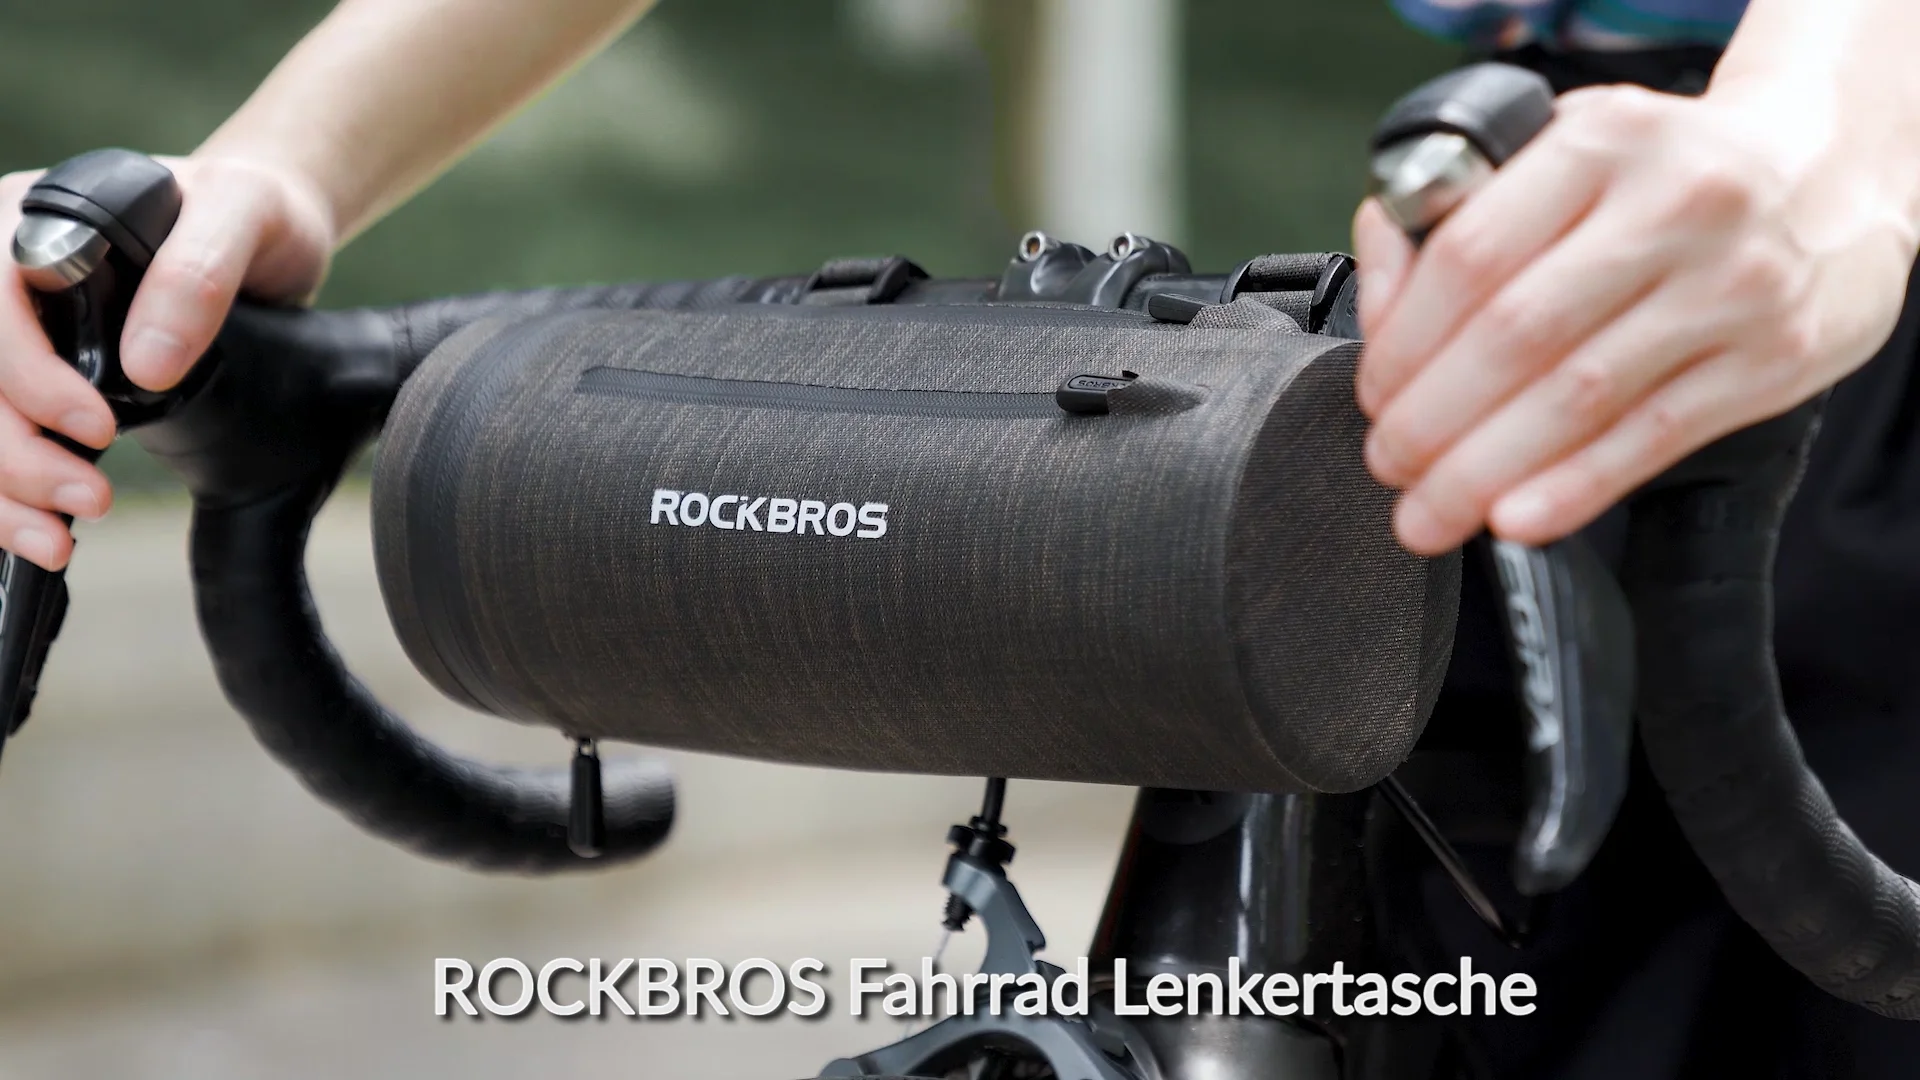 ROCKBROS Handyhalterung Fahrrad Lenkertasche B17-7 on Vimeo